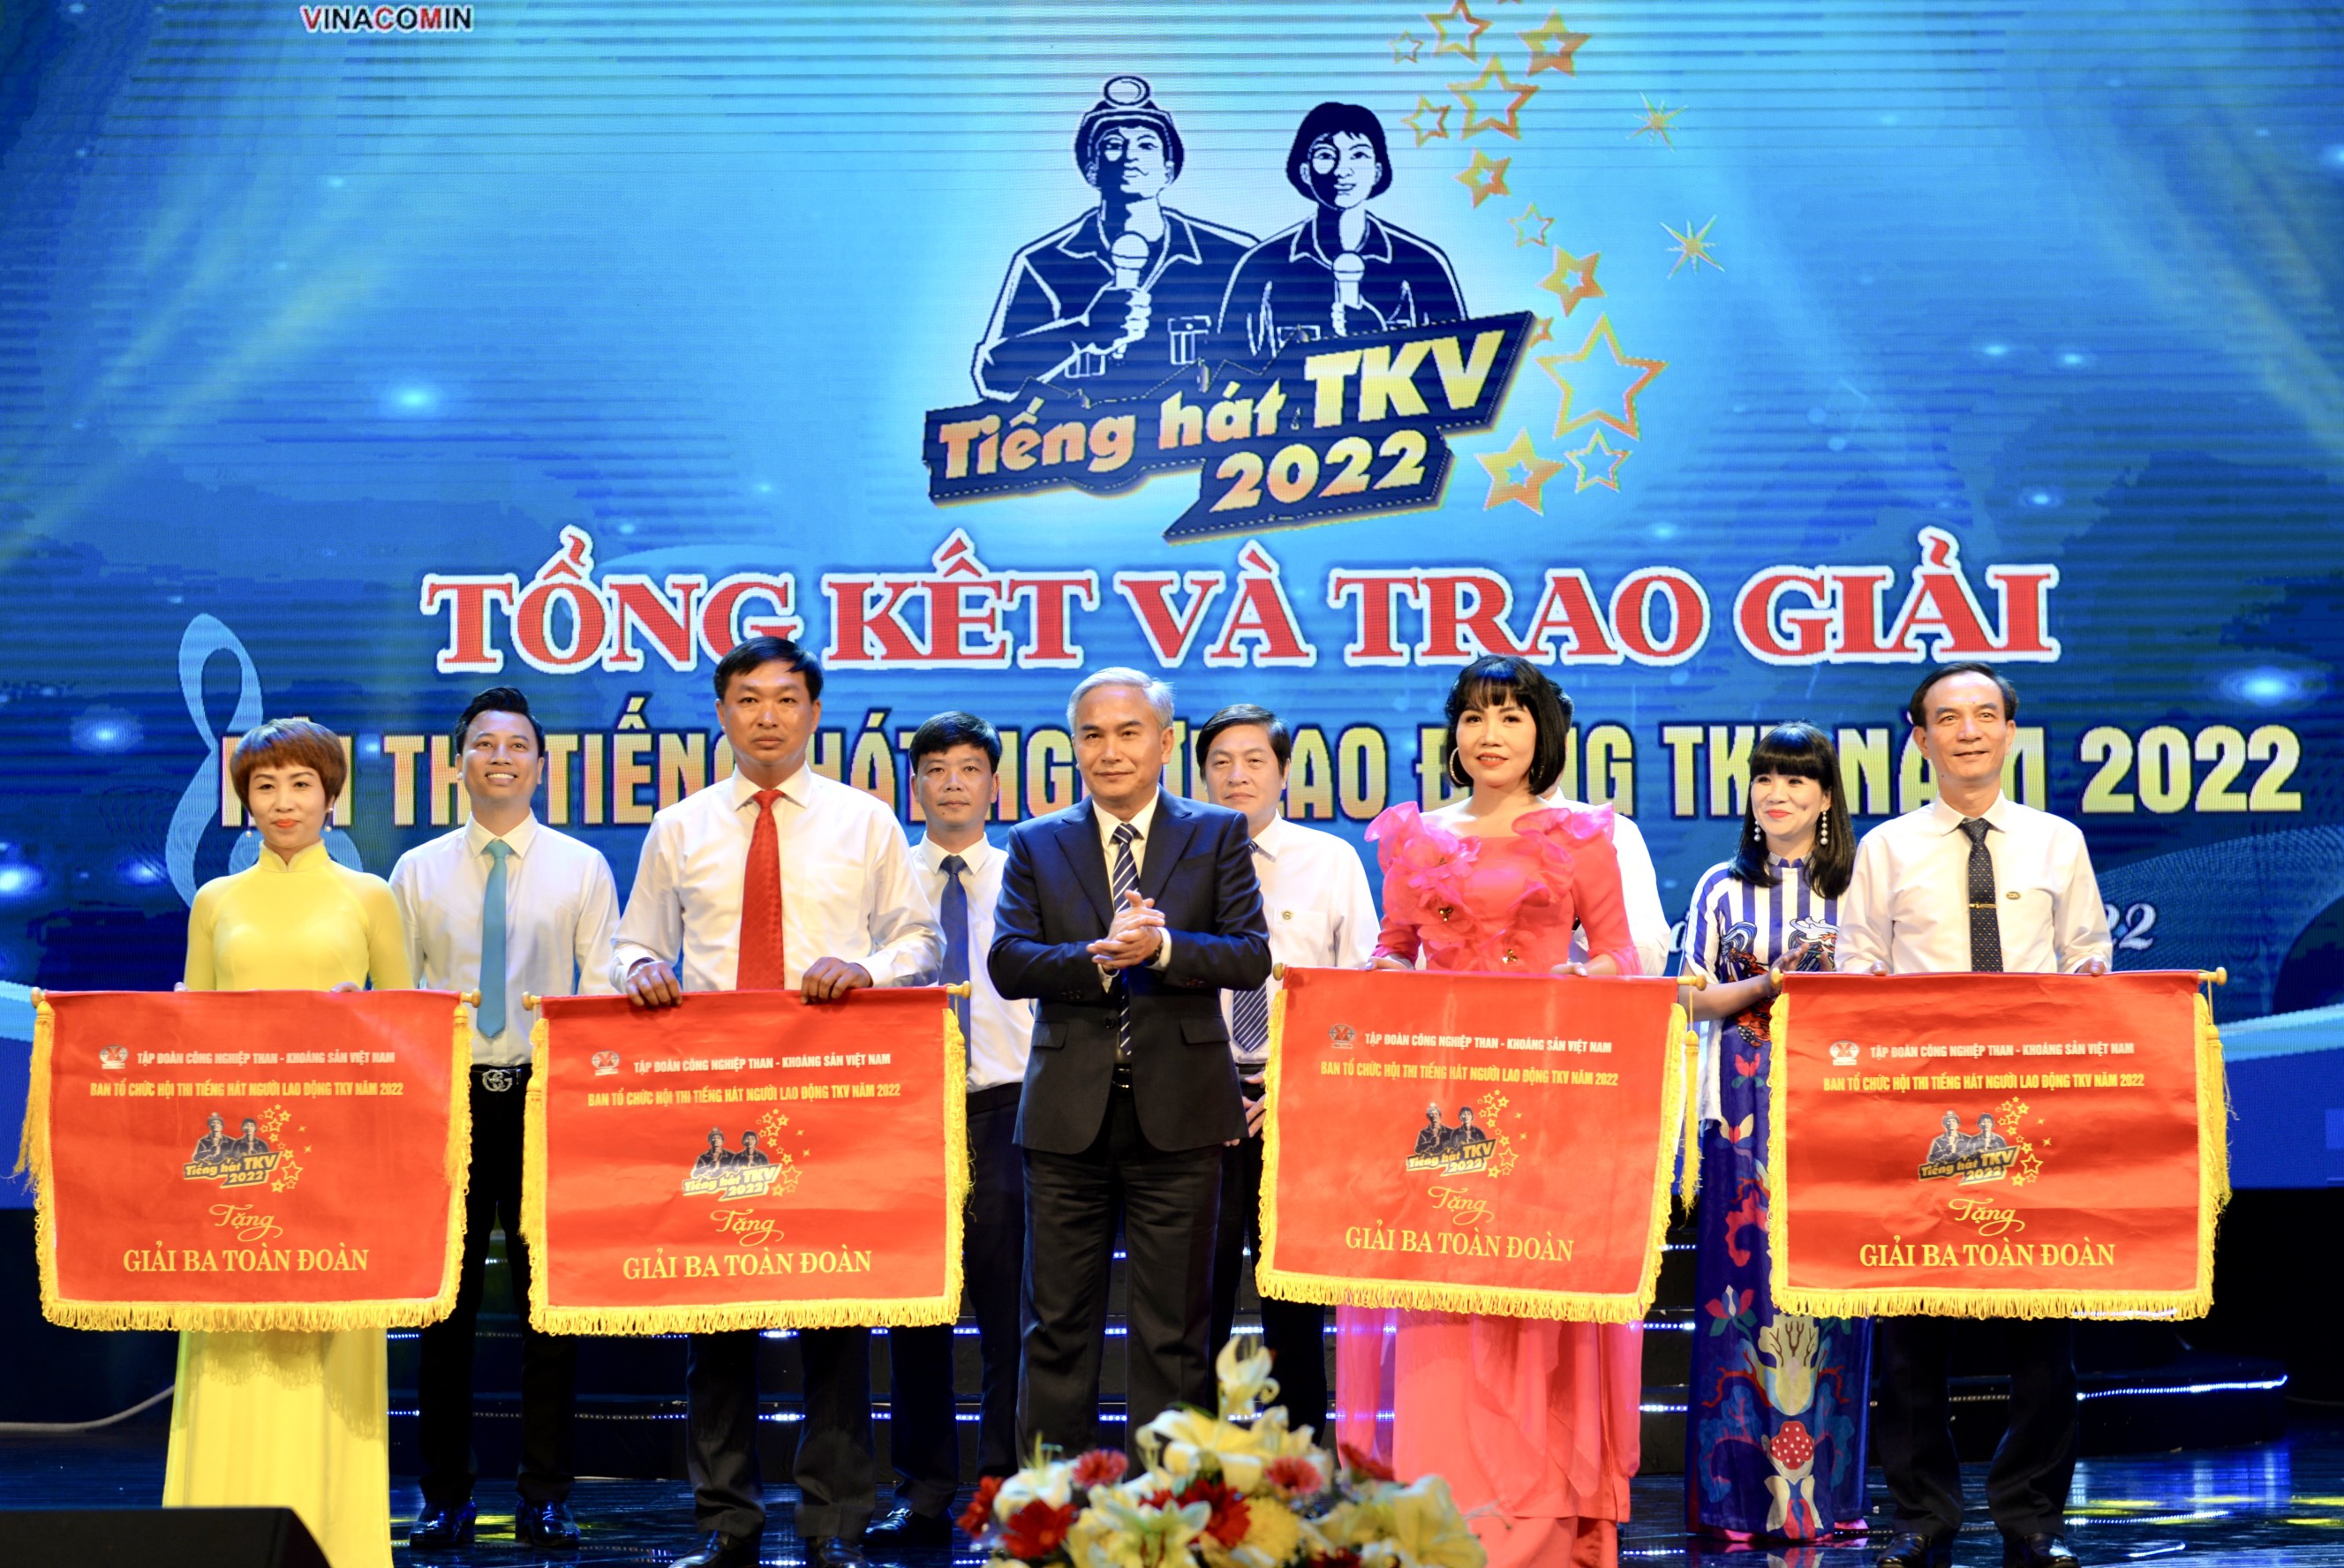 Đồng chí Vũ Anh Tuấn, Ủy viên BTV Tỉnh ủy, Bí thư Đảng ủy Than Quảng Ninh, Phó Tổng Giám đốc Tập đoàn Công nghiệp Than - Khoáng sản Việt Nam, trao giải ba cho các đoàn.